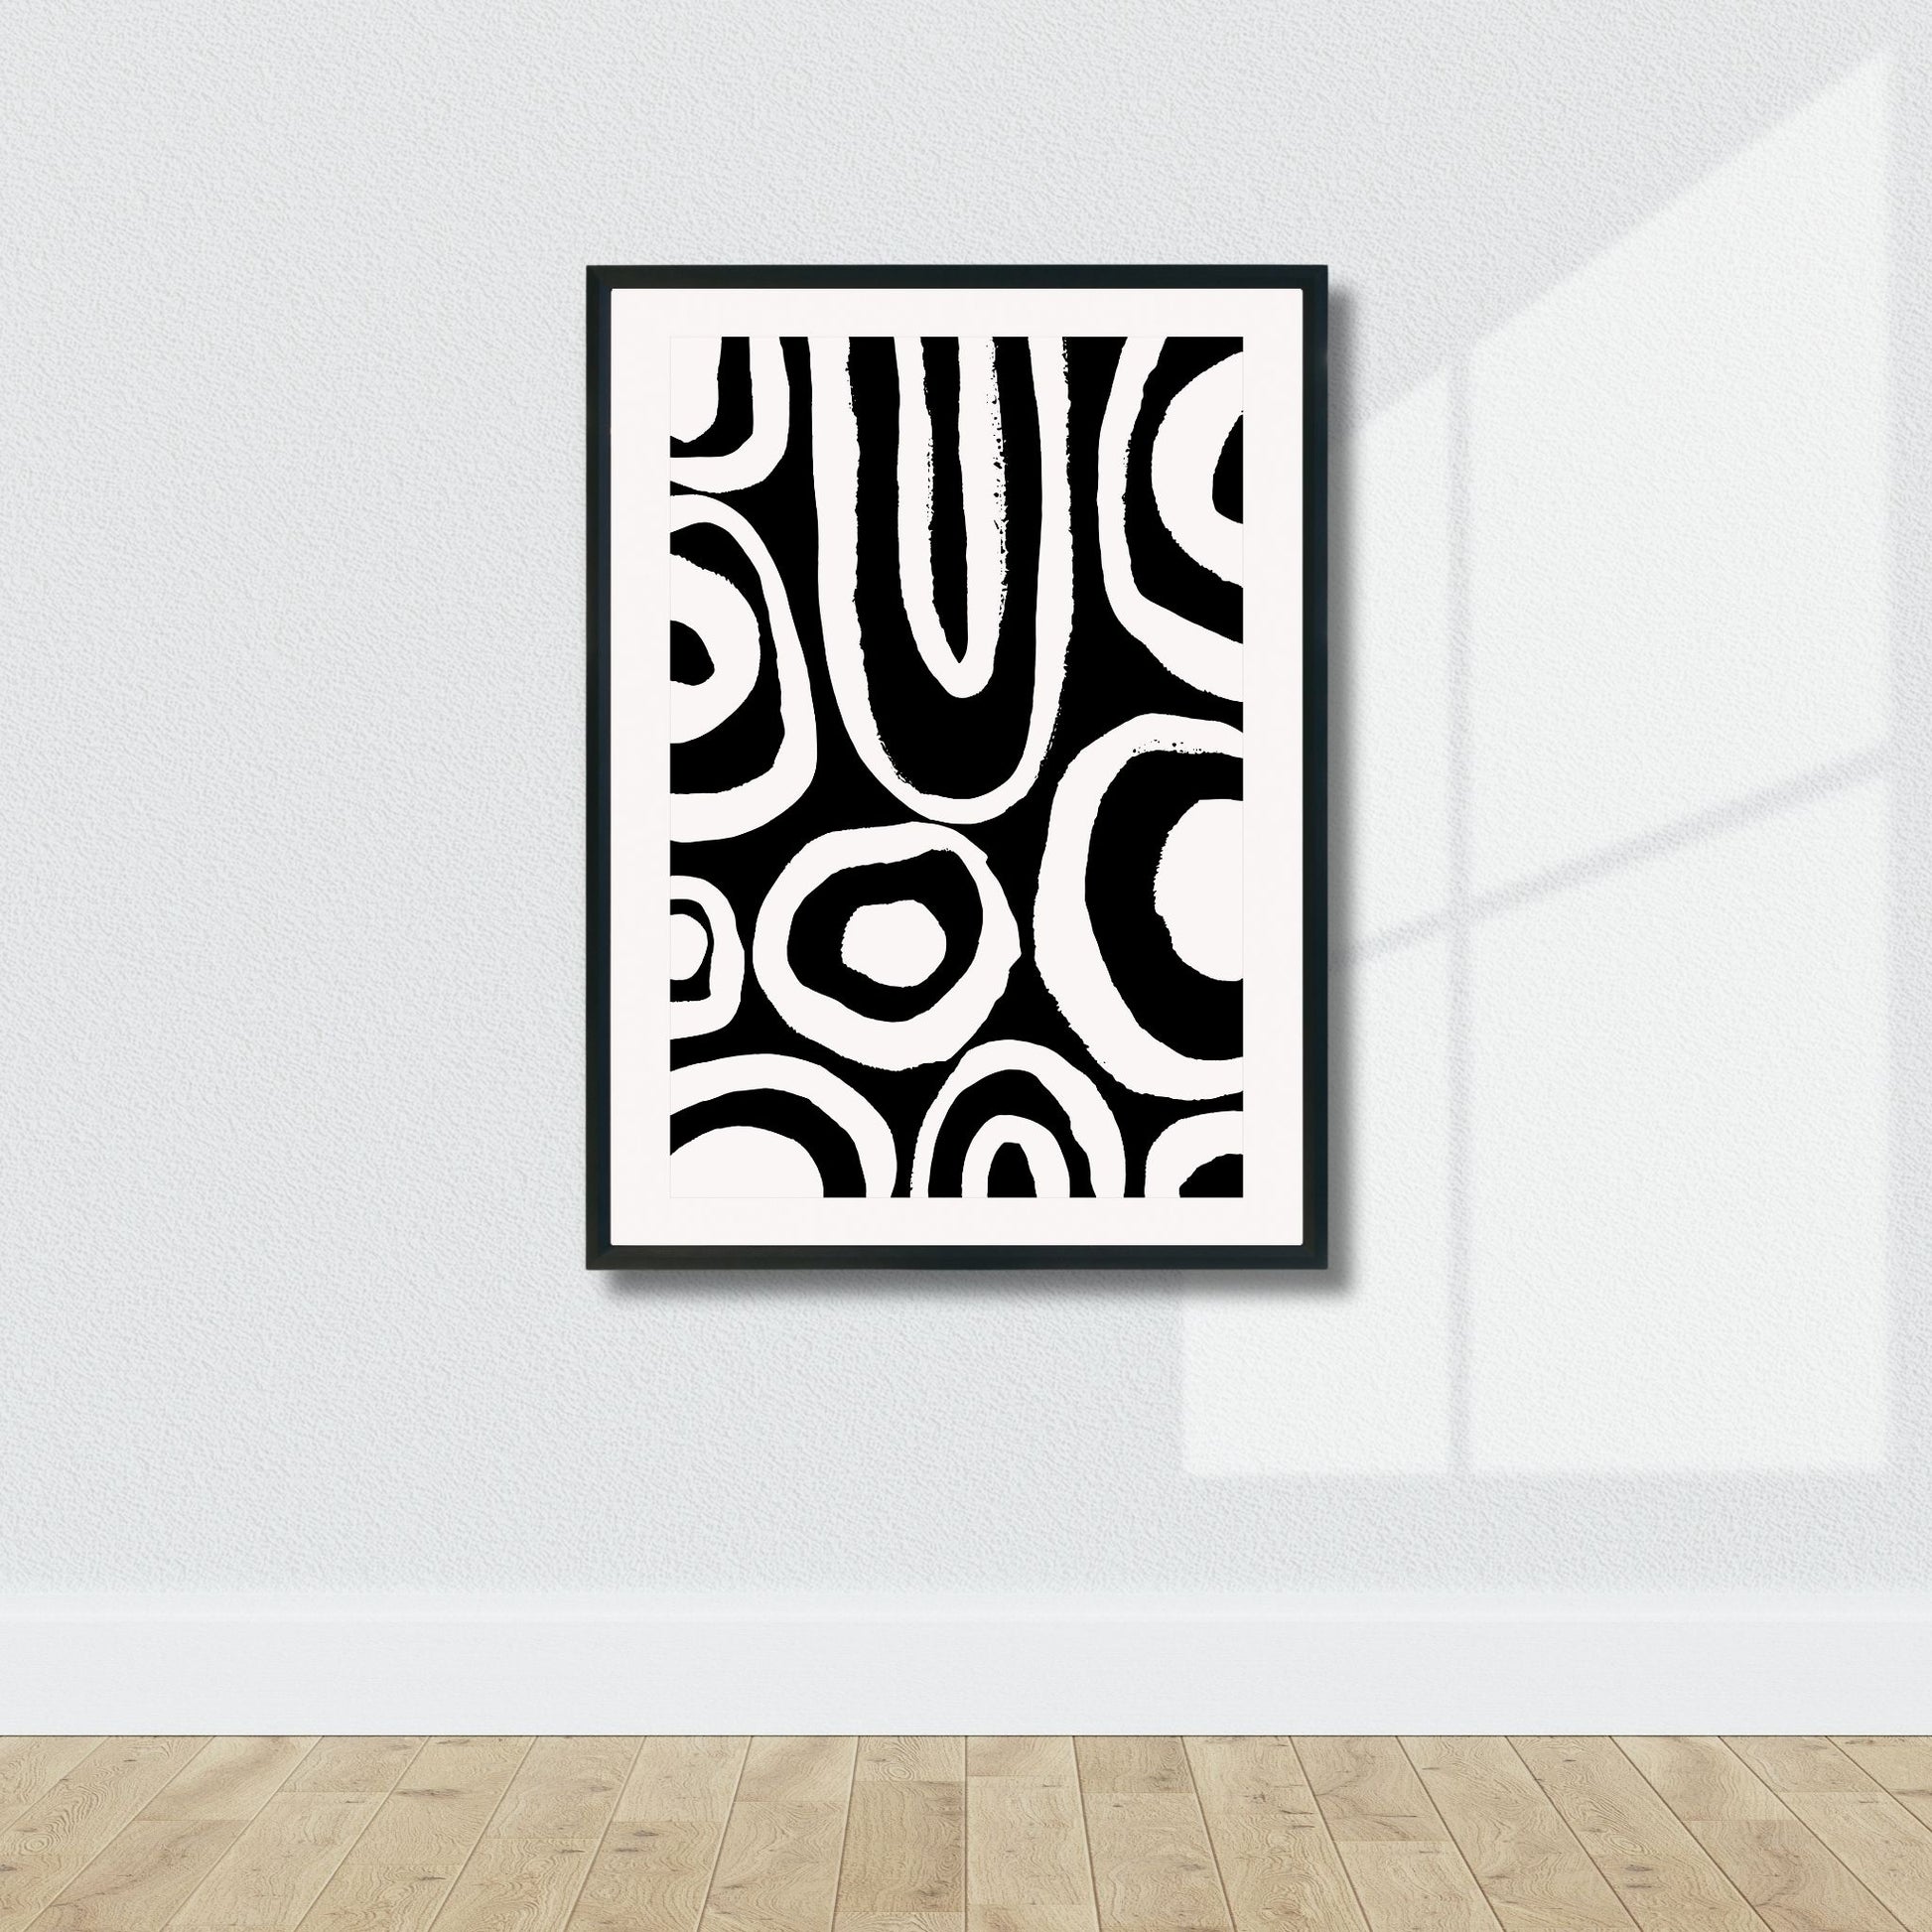 Modern Art - plakat i grafisk design i sort abstrakt mønster. Illustrasjonsbilde av plakat i sort ramme.